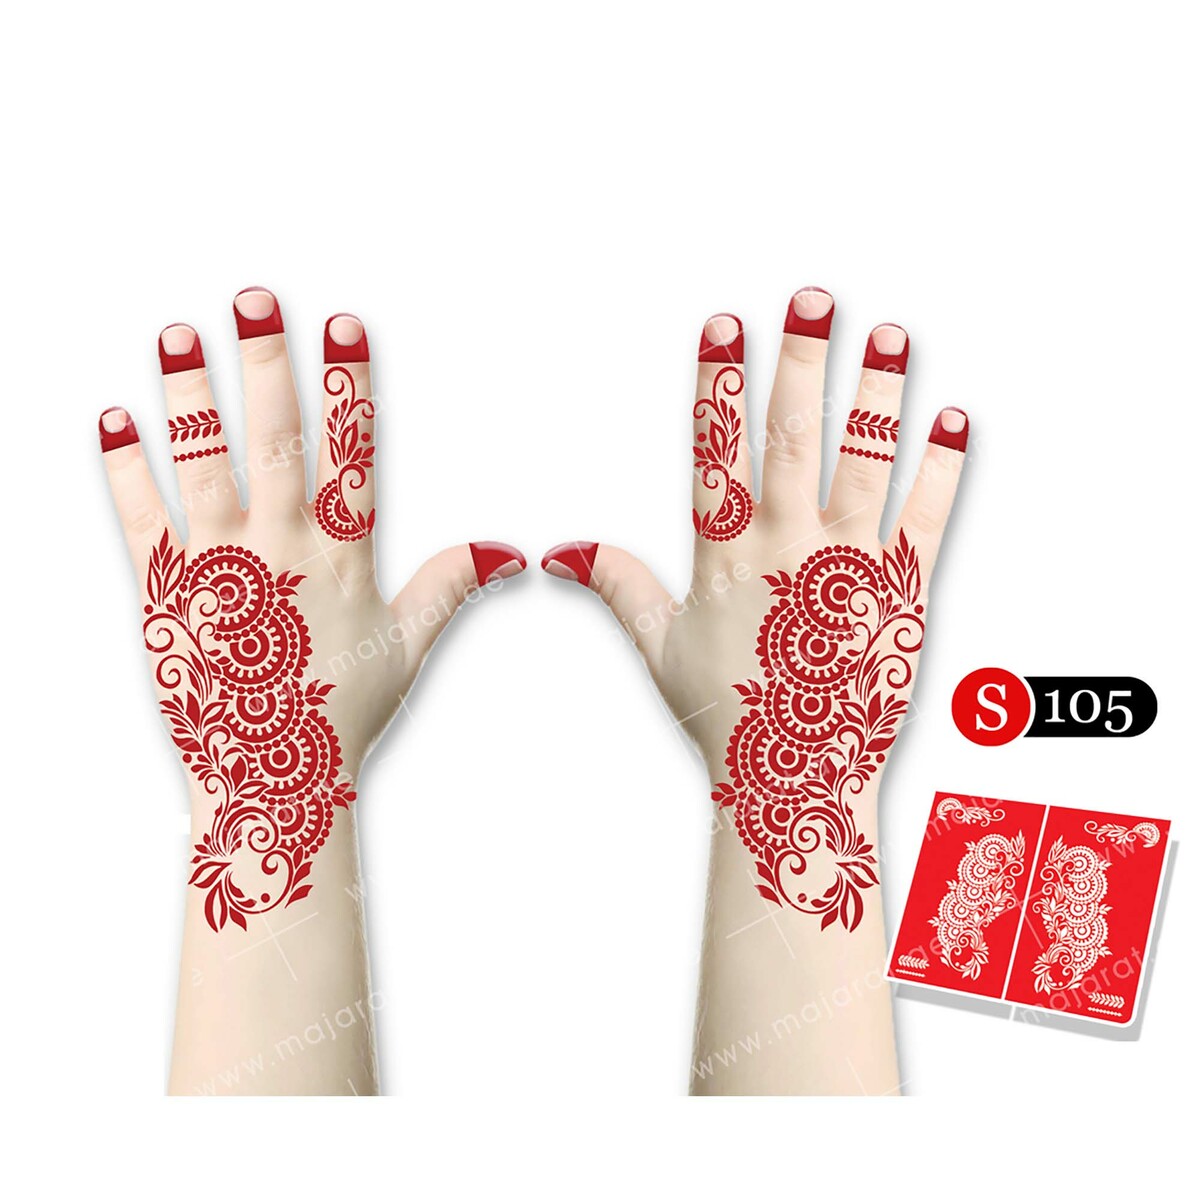 Majarat Henna Design Sticker Small S105 18x15cm Online at Best Price ...